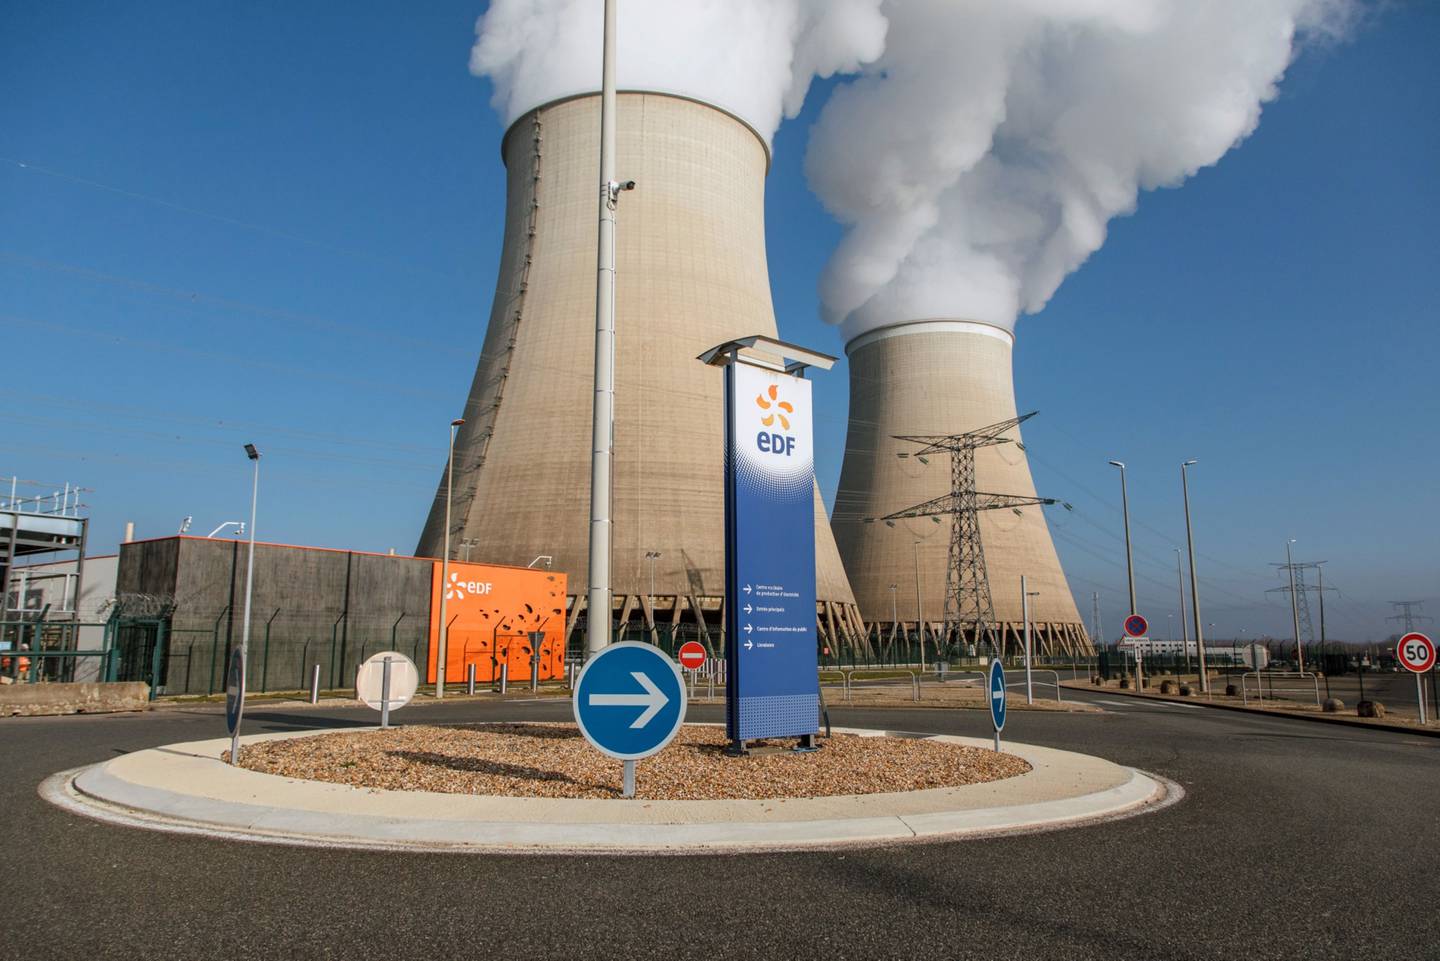 Los misiles alcanzaron una instalación de eliminación de residuos radiactivos en Kiev, y un transformador eléctrico resultó dañado en un depósito similar en Kharkiv, según un correo electrónico de la Agencia Internacional de Energía Atómica (IAEA, por sus siglas en inglés).